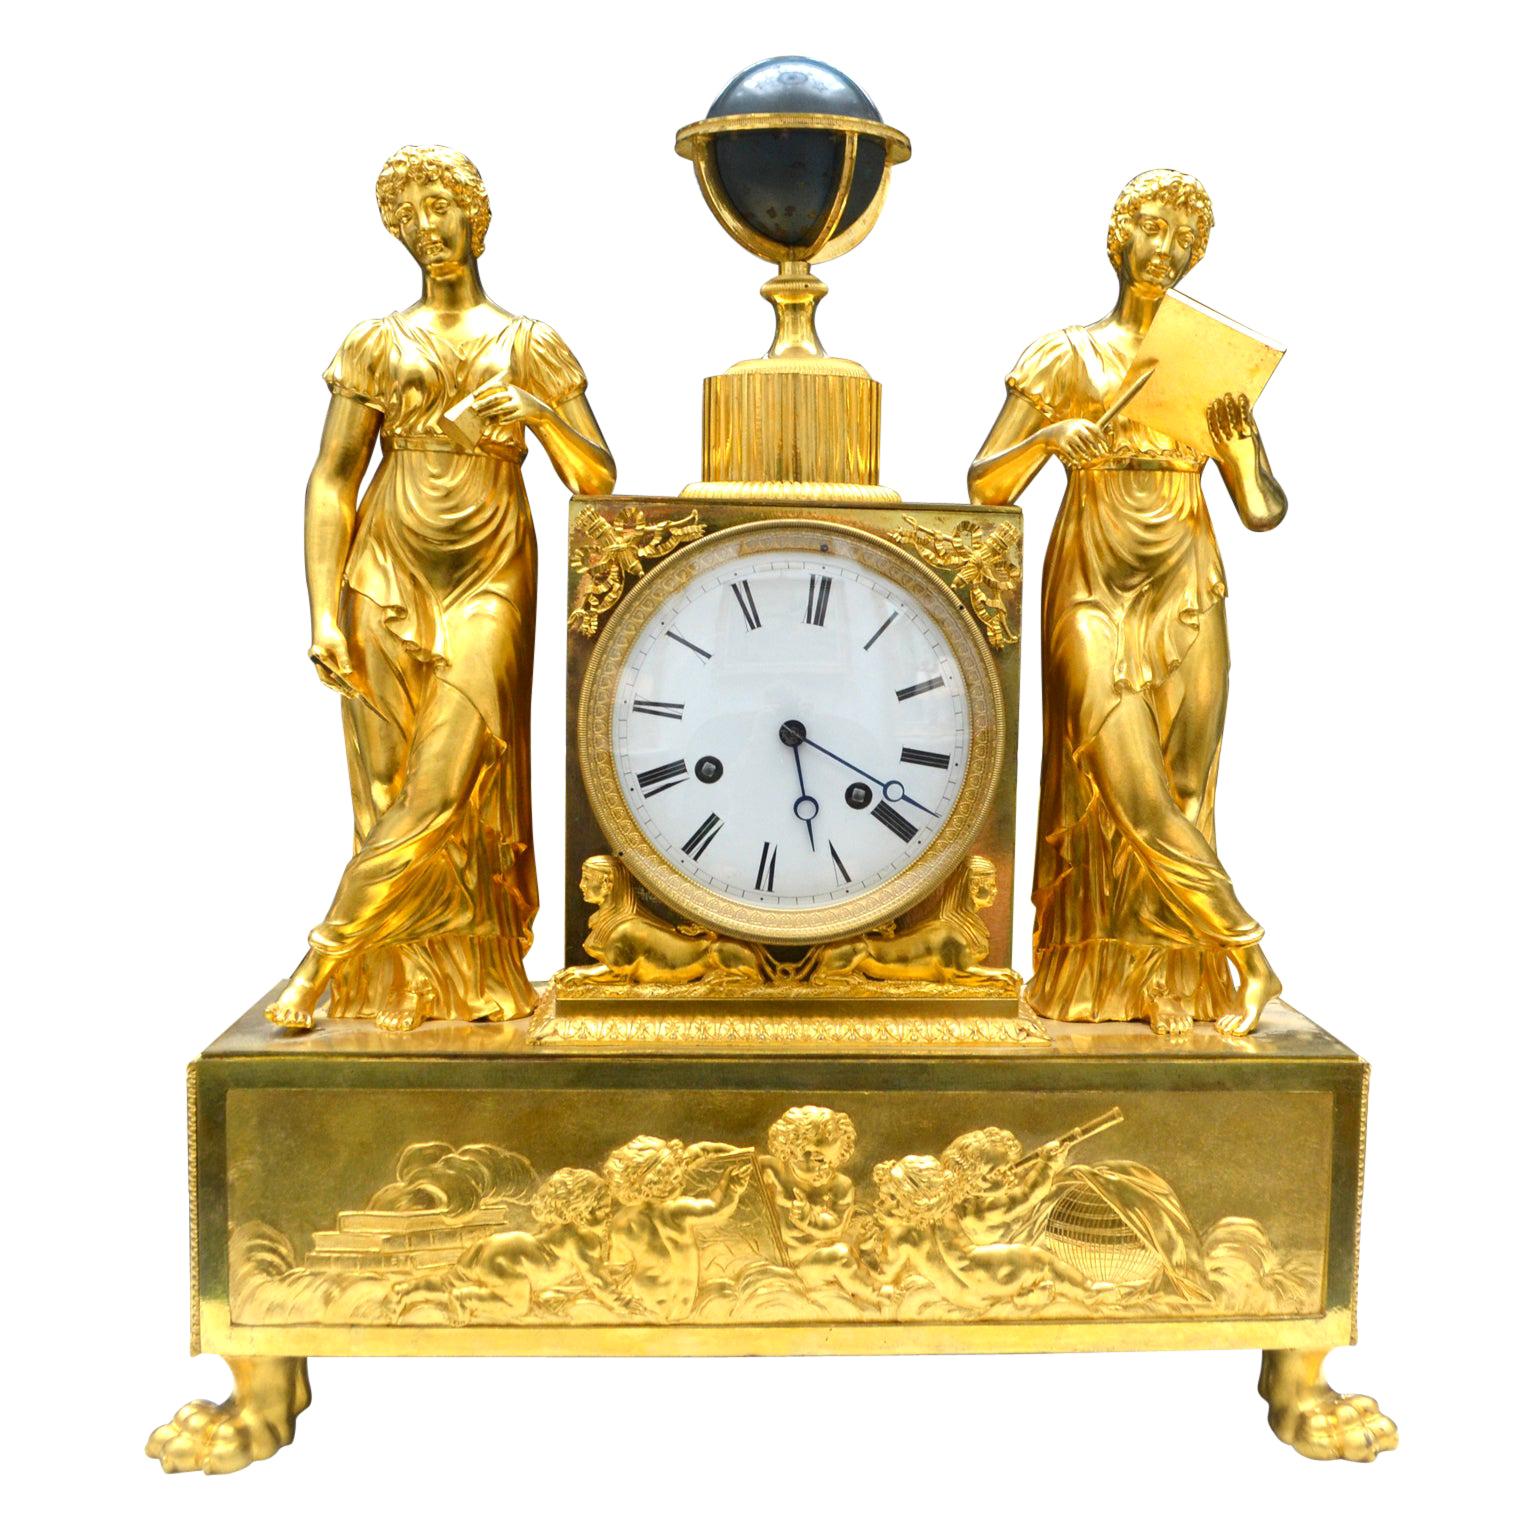  Horloge allégorique de l'Empire français en bronze doré représentant les sciences astronomiques